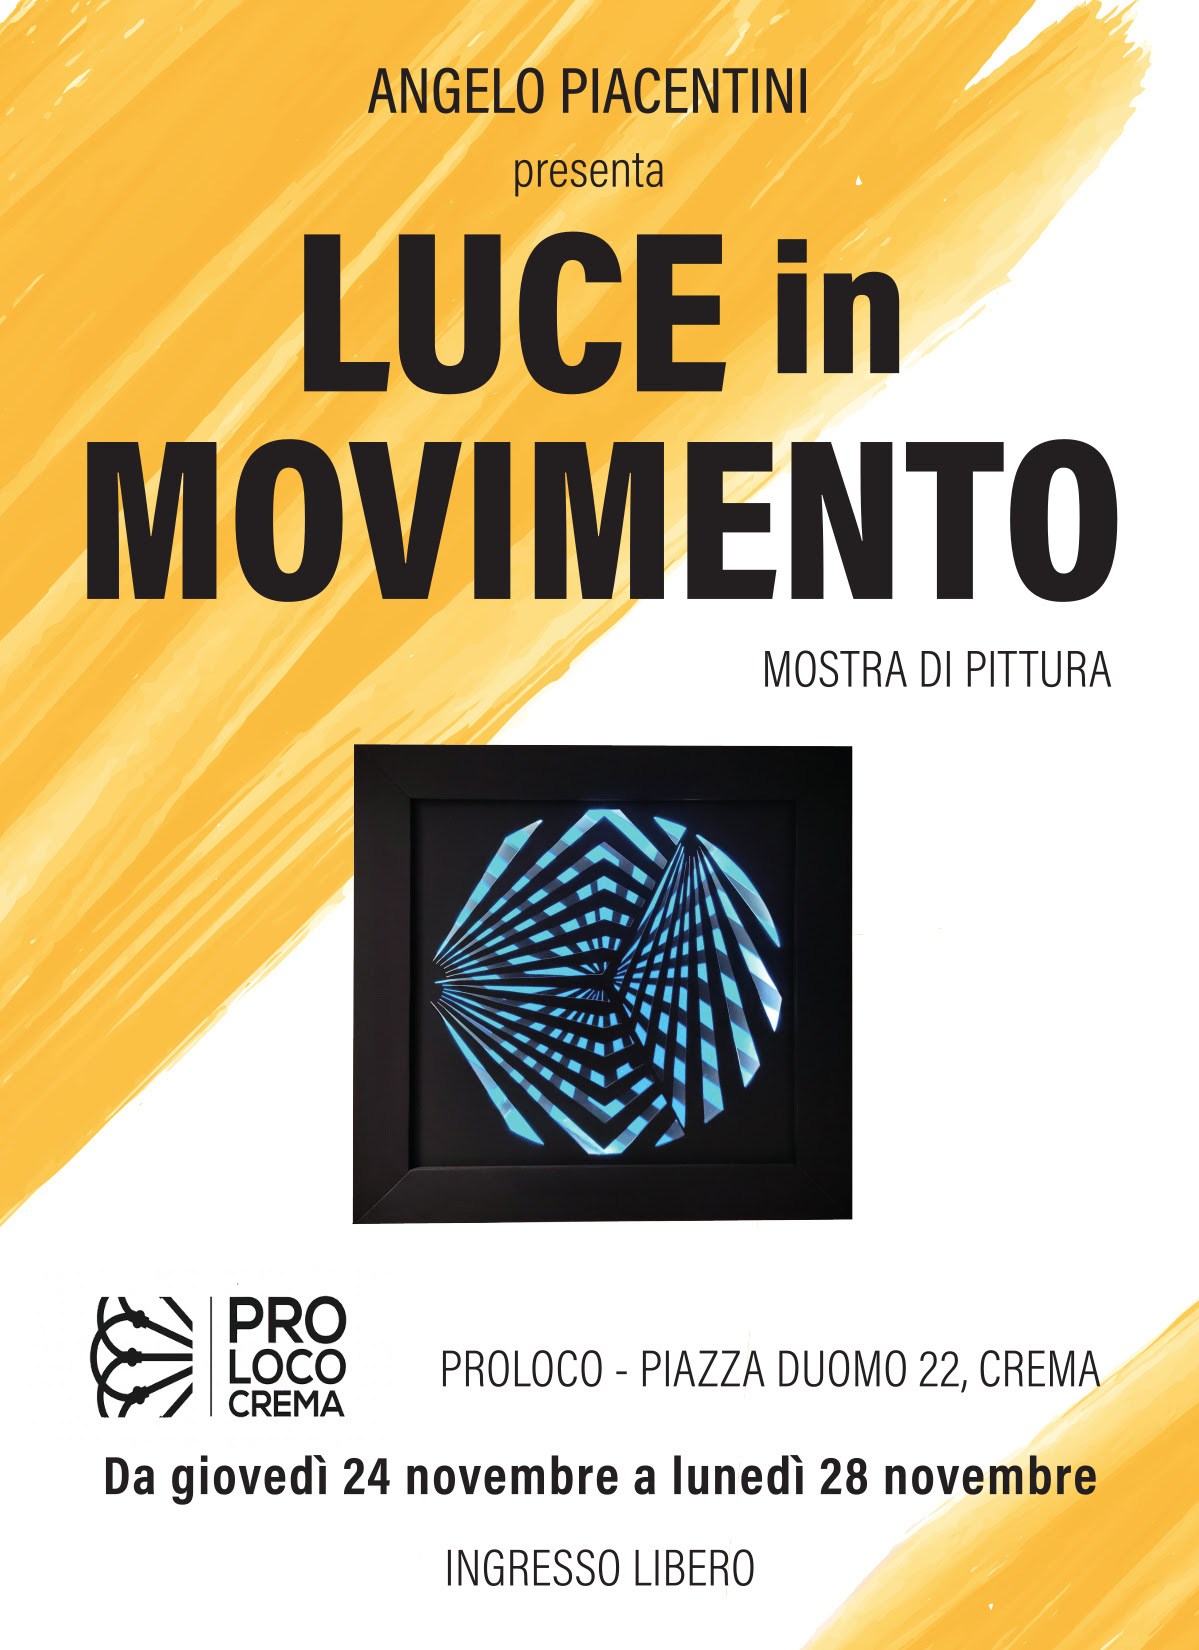 Luce in movimento, Angelo Piacentini in mostra alla Pro Loco